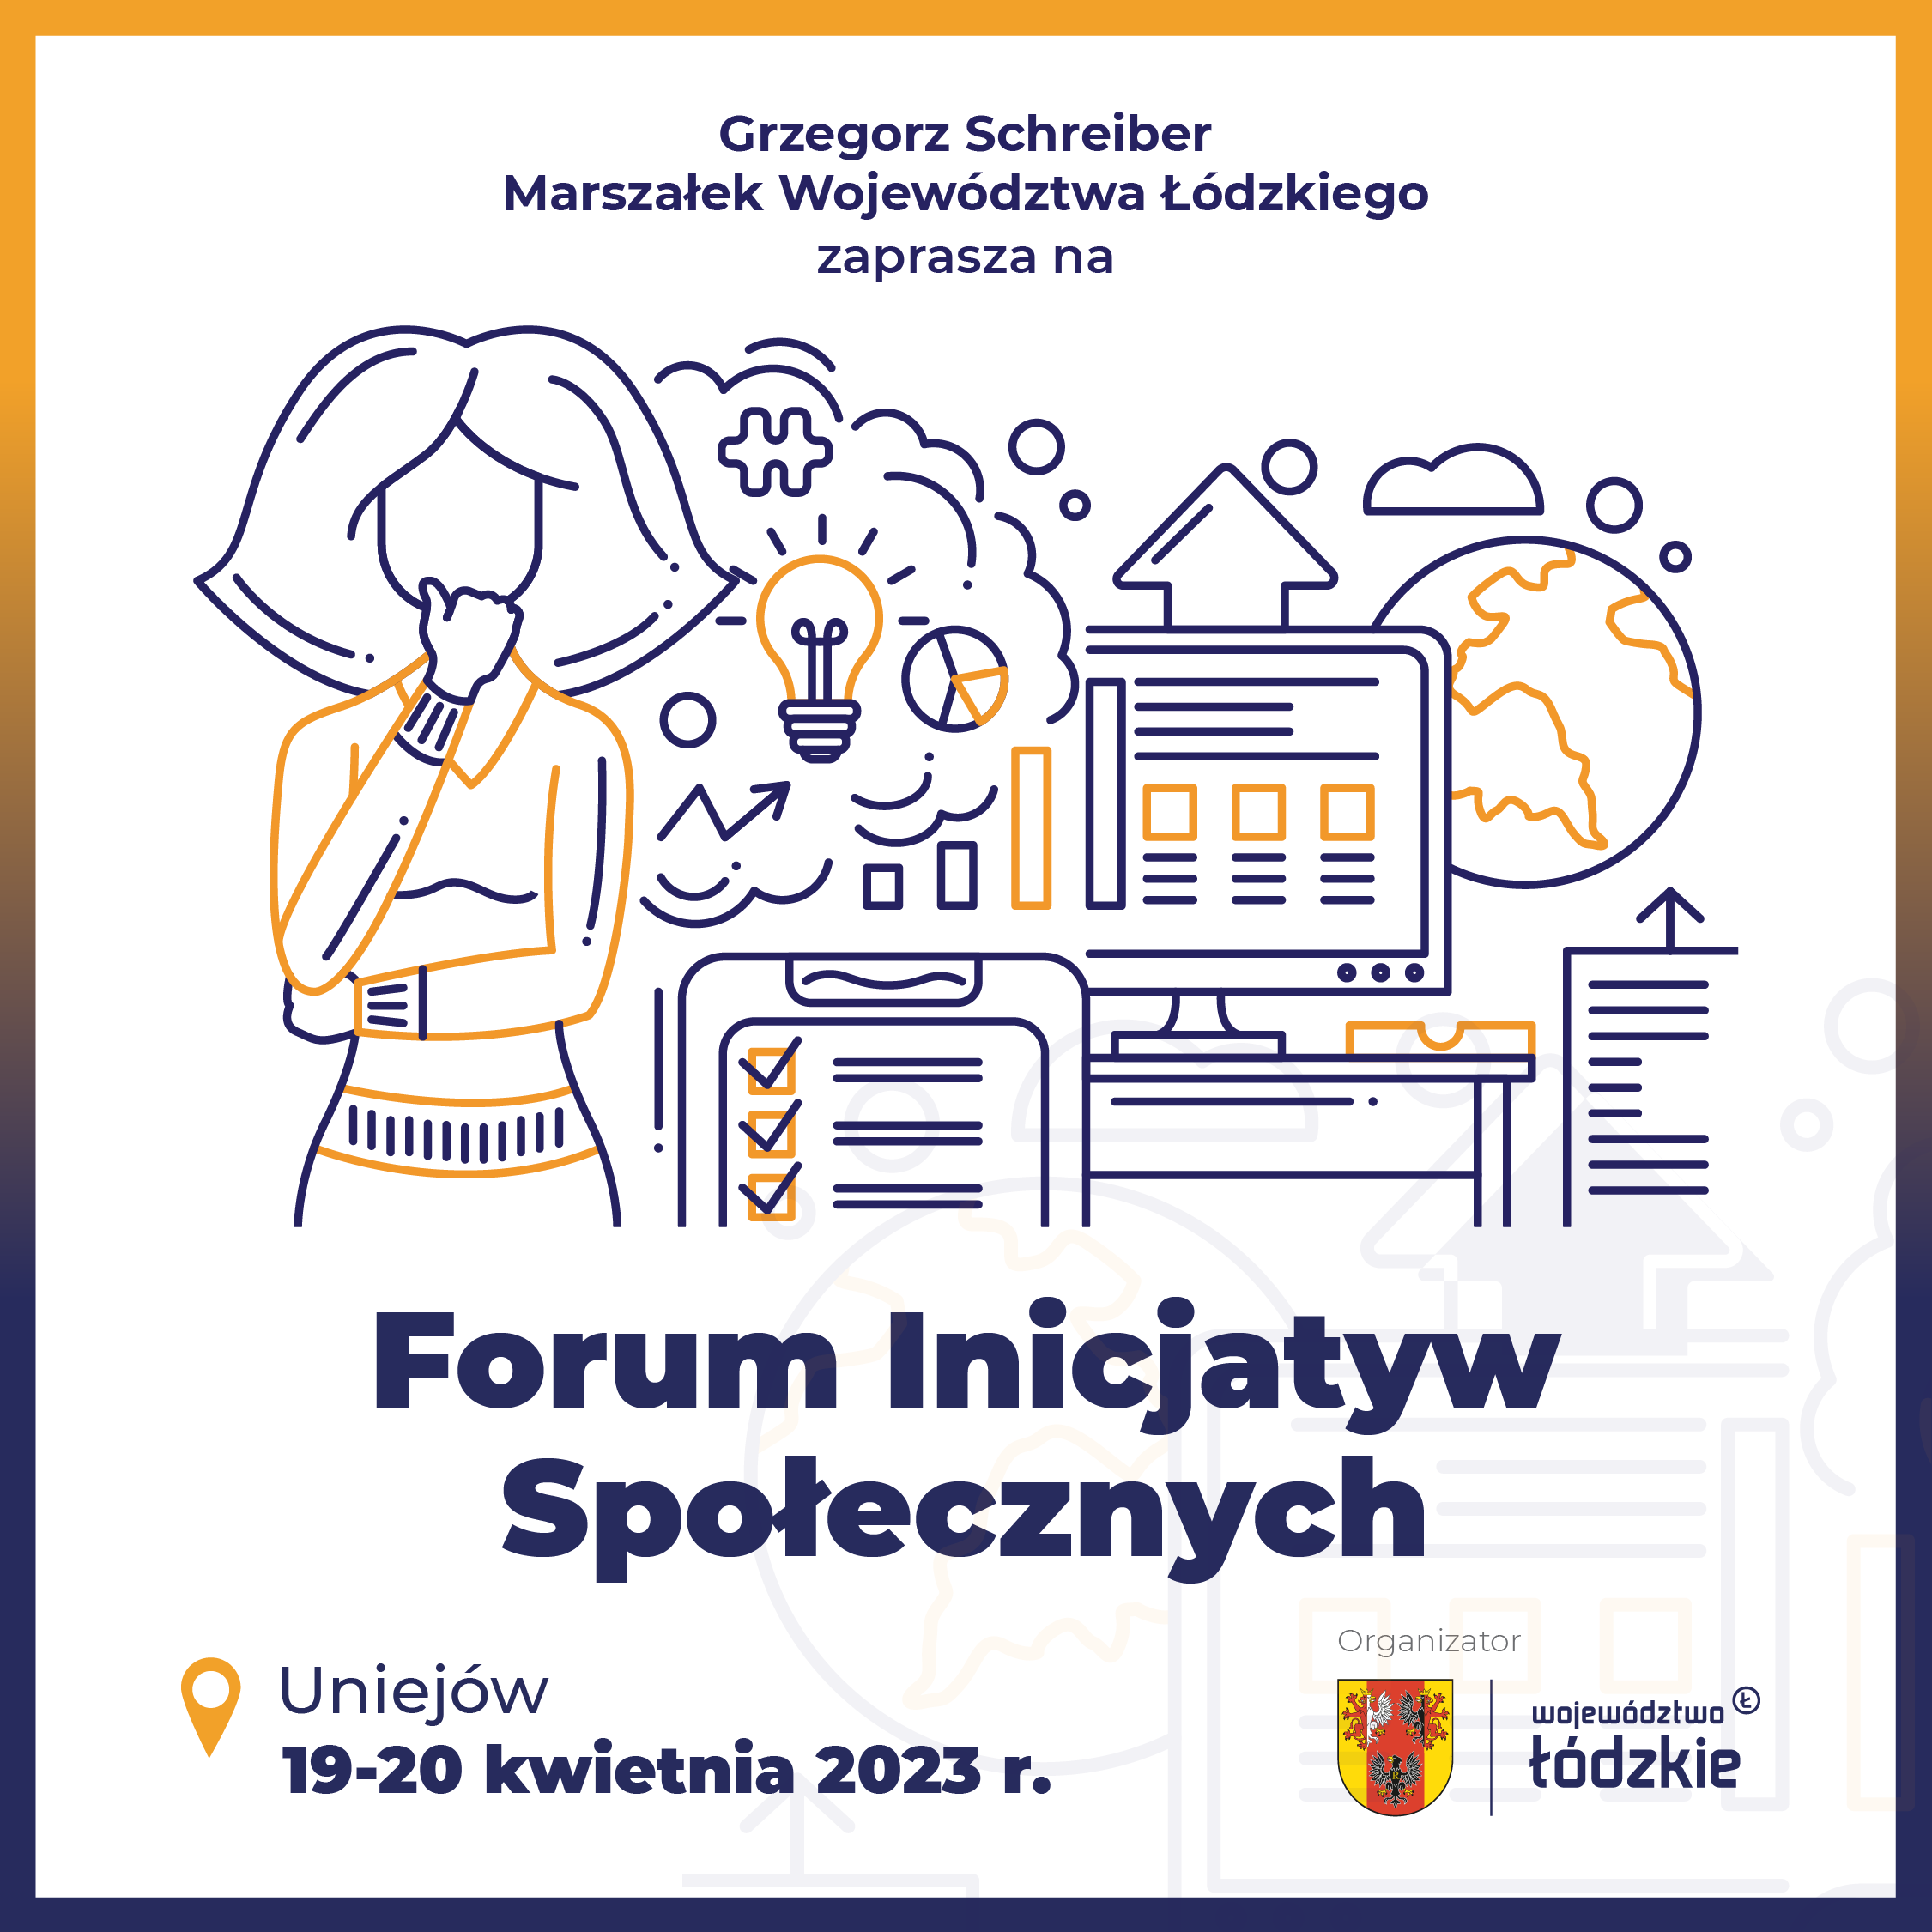 Grzegorz Schreiber marszałek województwa łódzkiego zaprasza na Forum Inicjatyw Społecznych 19,20 kwietnia 2023 roku w Uniejowie